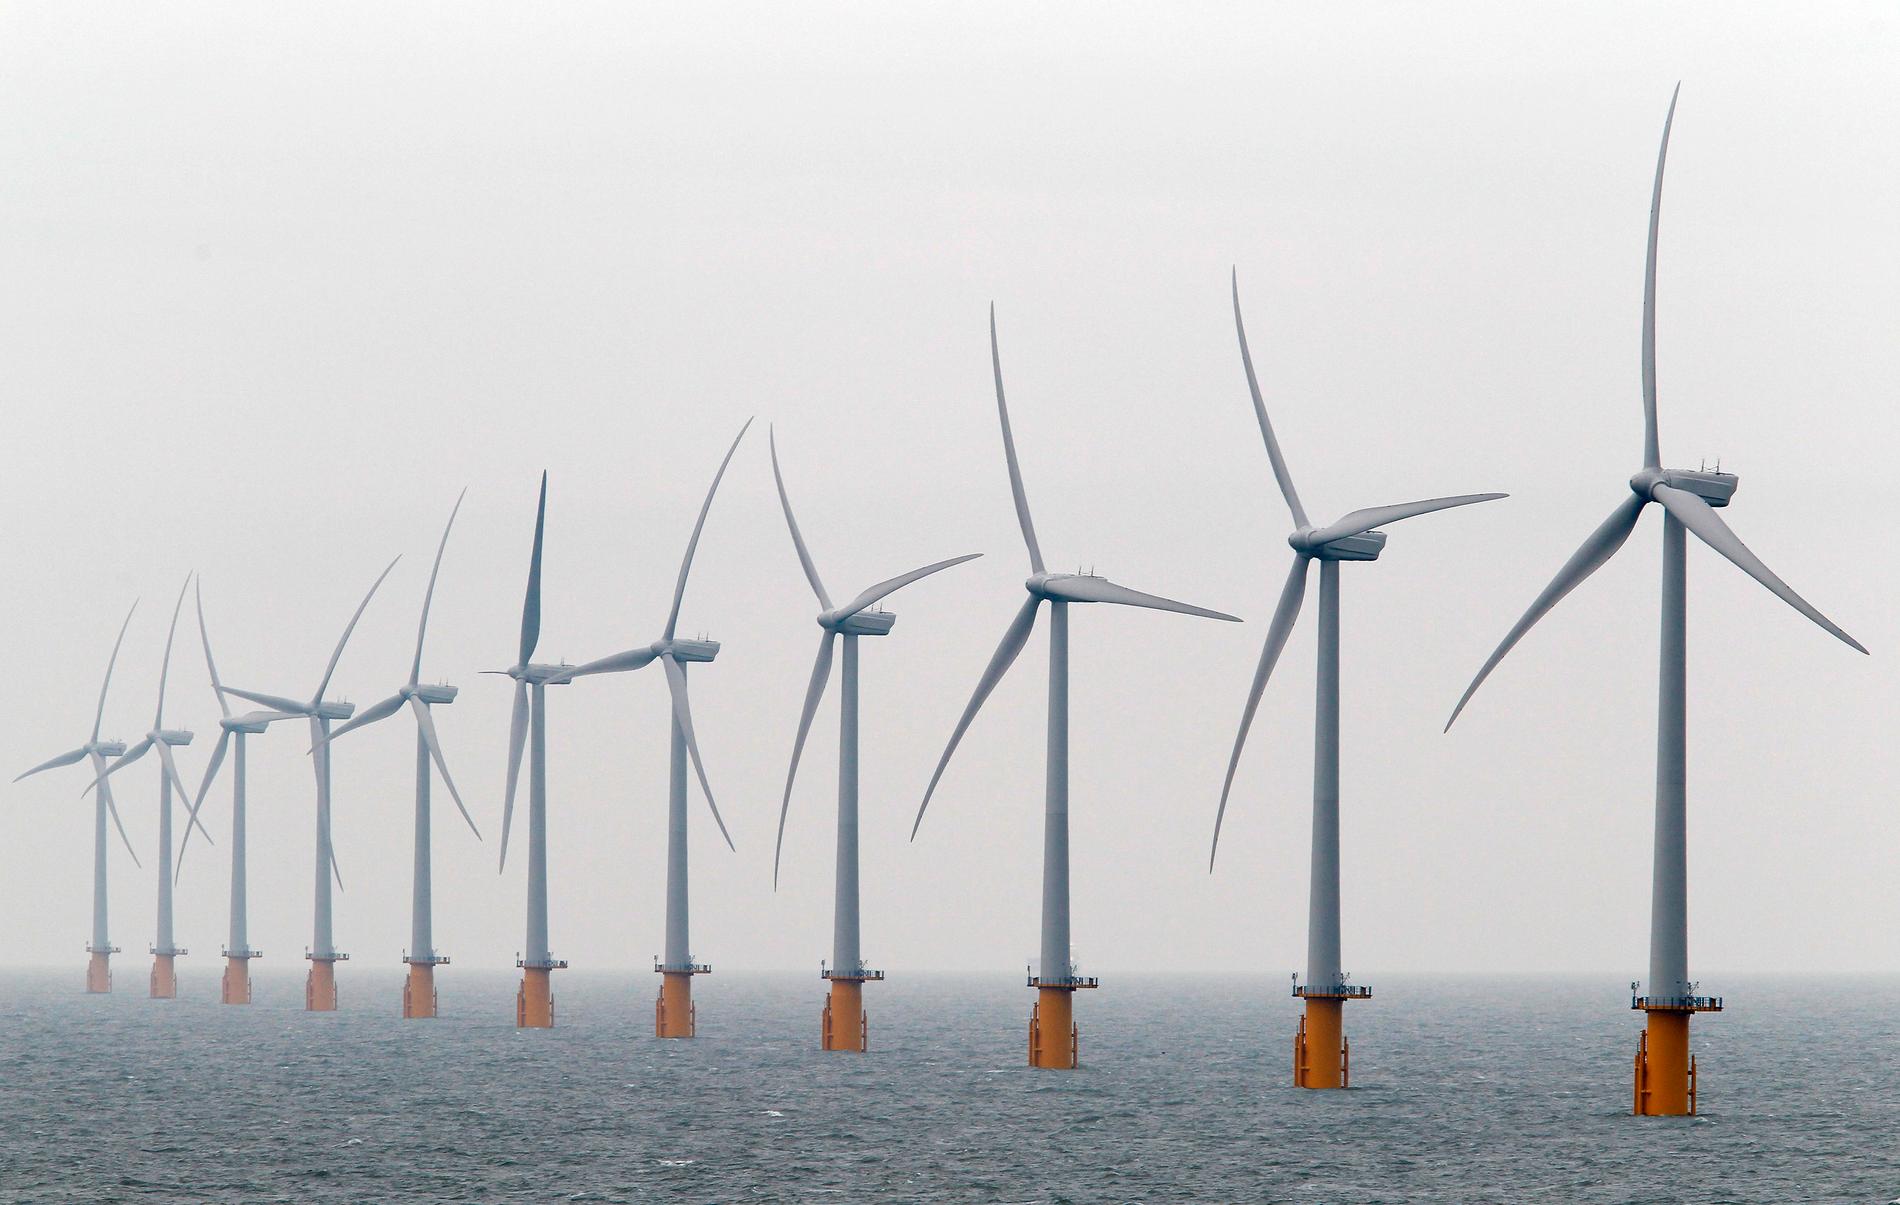 L'échec des enchères britanniques pourrait faire grimper le prix de l'énergie éolienne offshore norvégienne - E24 - 5